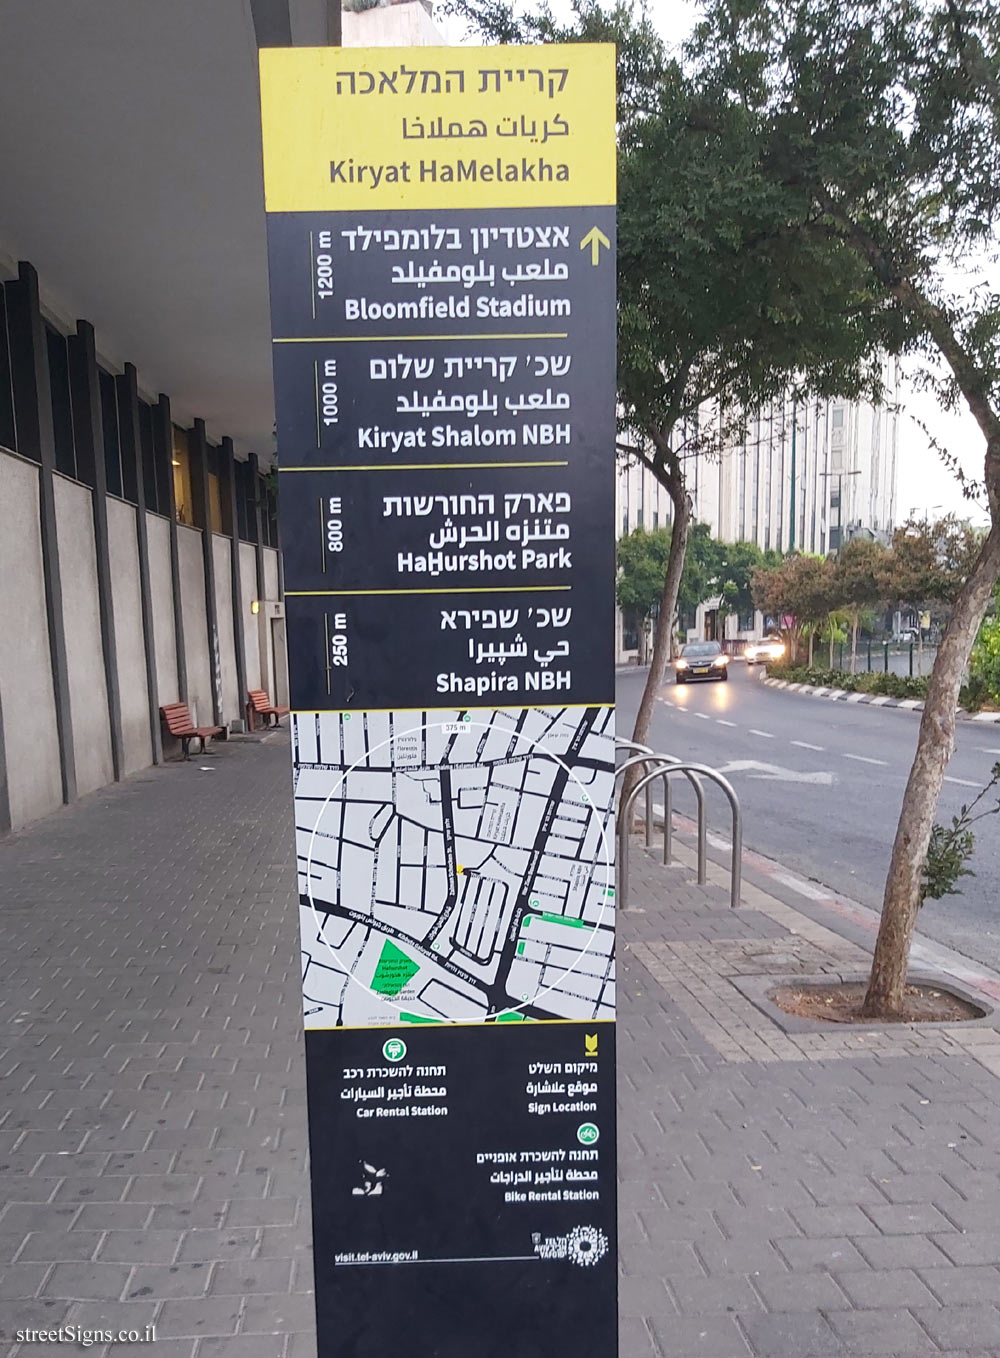 Tel Aviv - Kiryat HaMelakha - Shoken St 21, Tel Aviv-Yafo, Israel